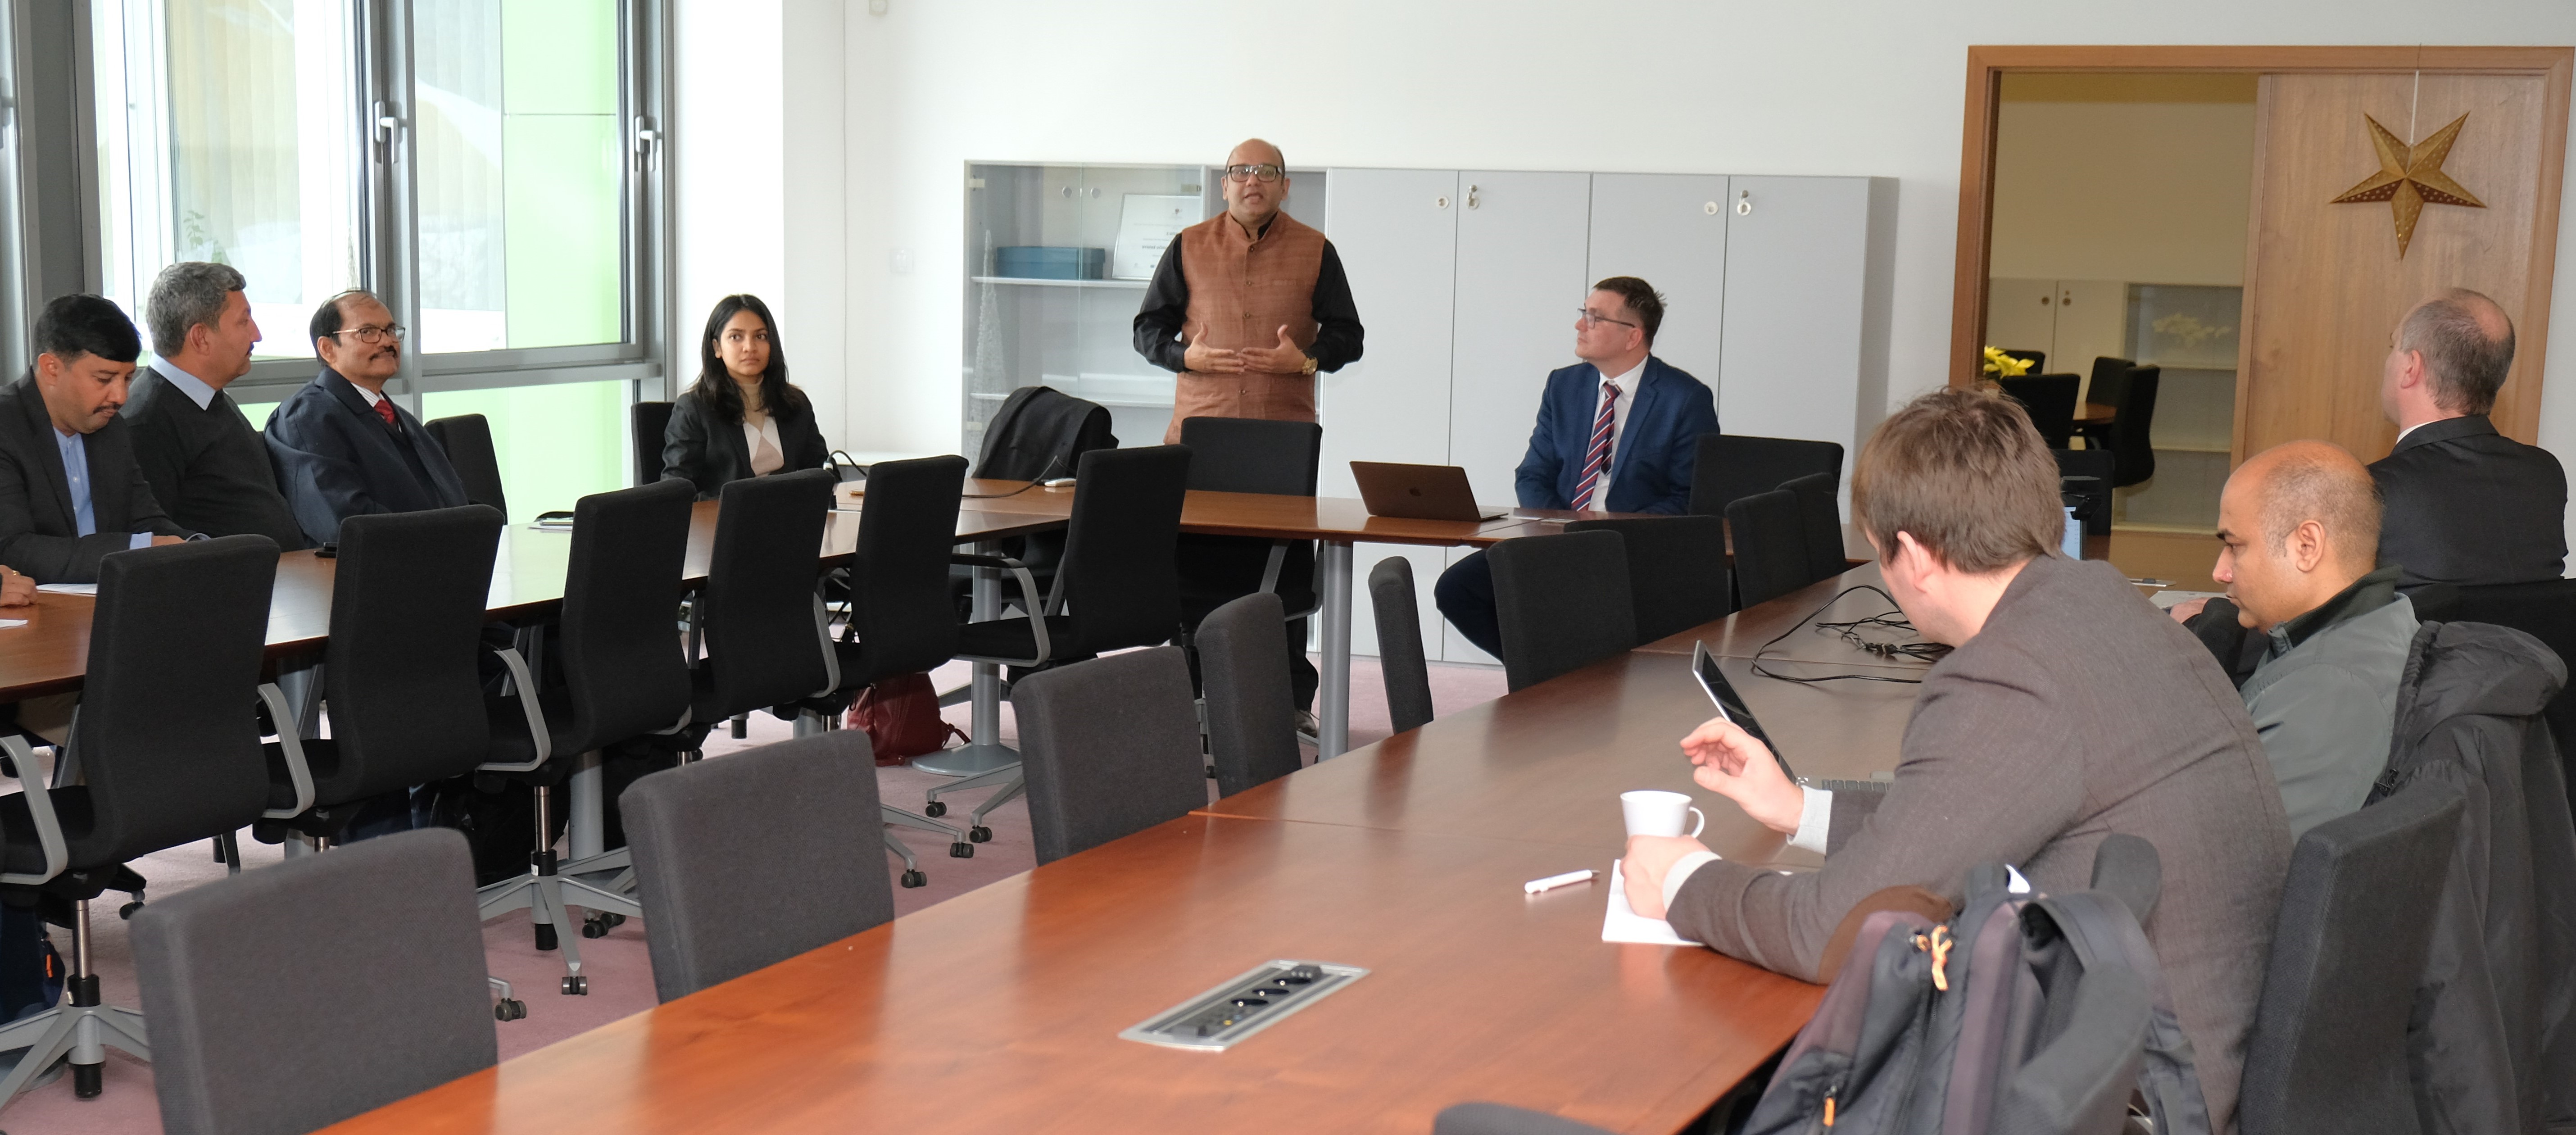 Zástupce indického velvyslanectví Shri Abhijit Chakraborty a prof. Ing. Jaroslav Koton, Ph.D. oslovili účastníky workshopu během zahajovací sekce